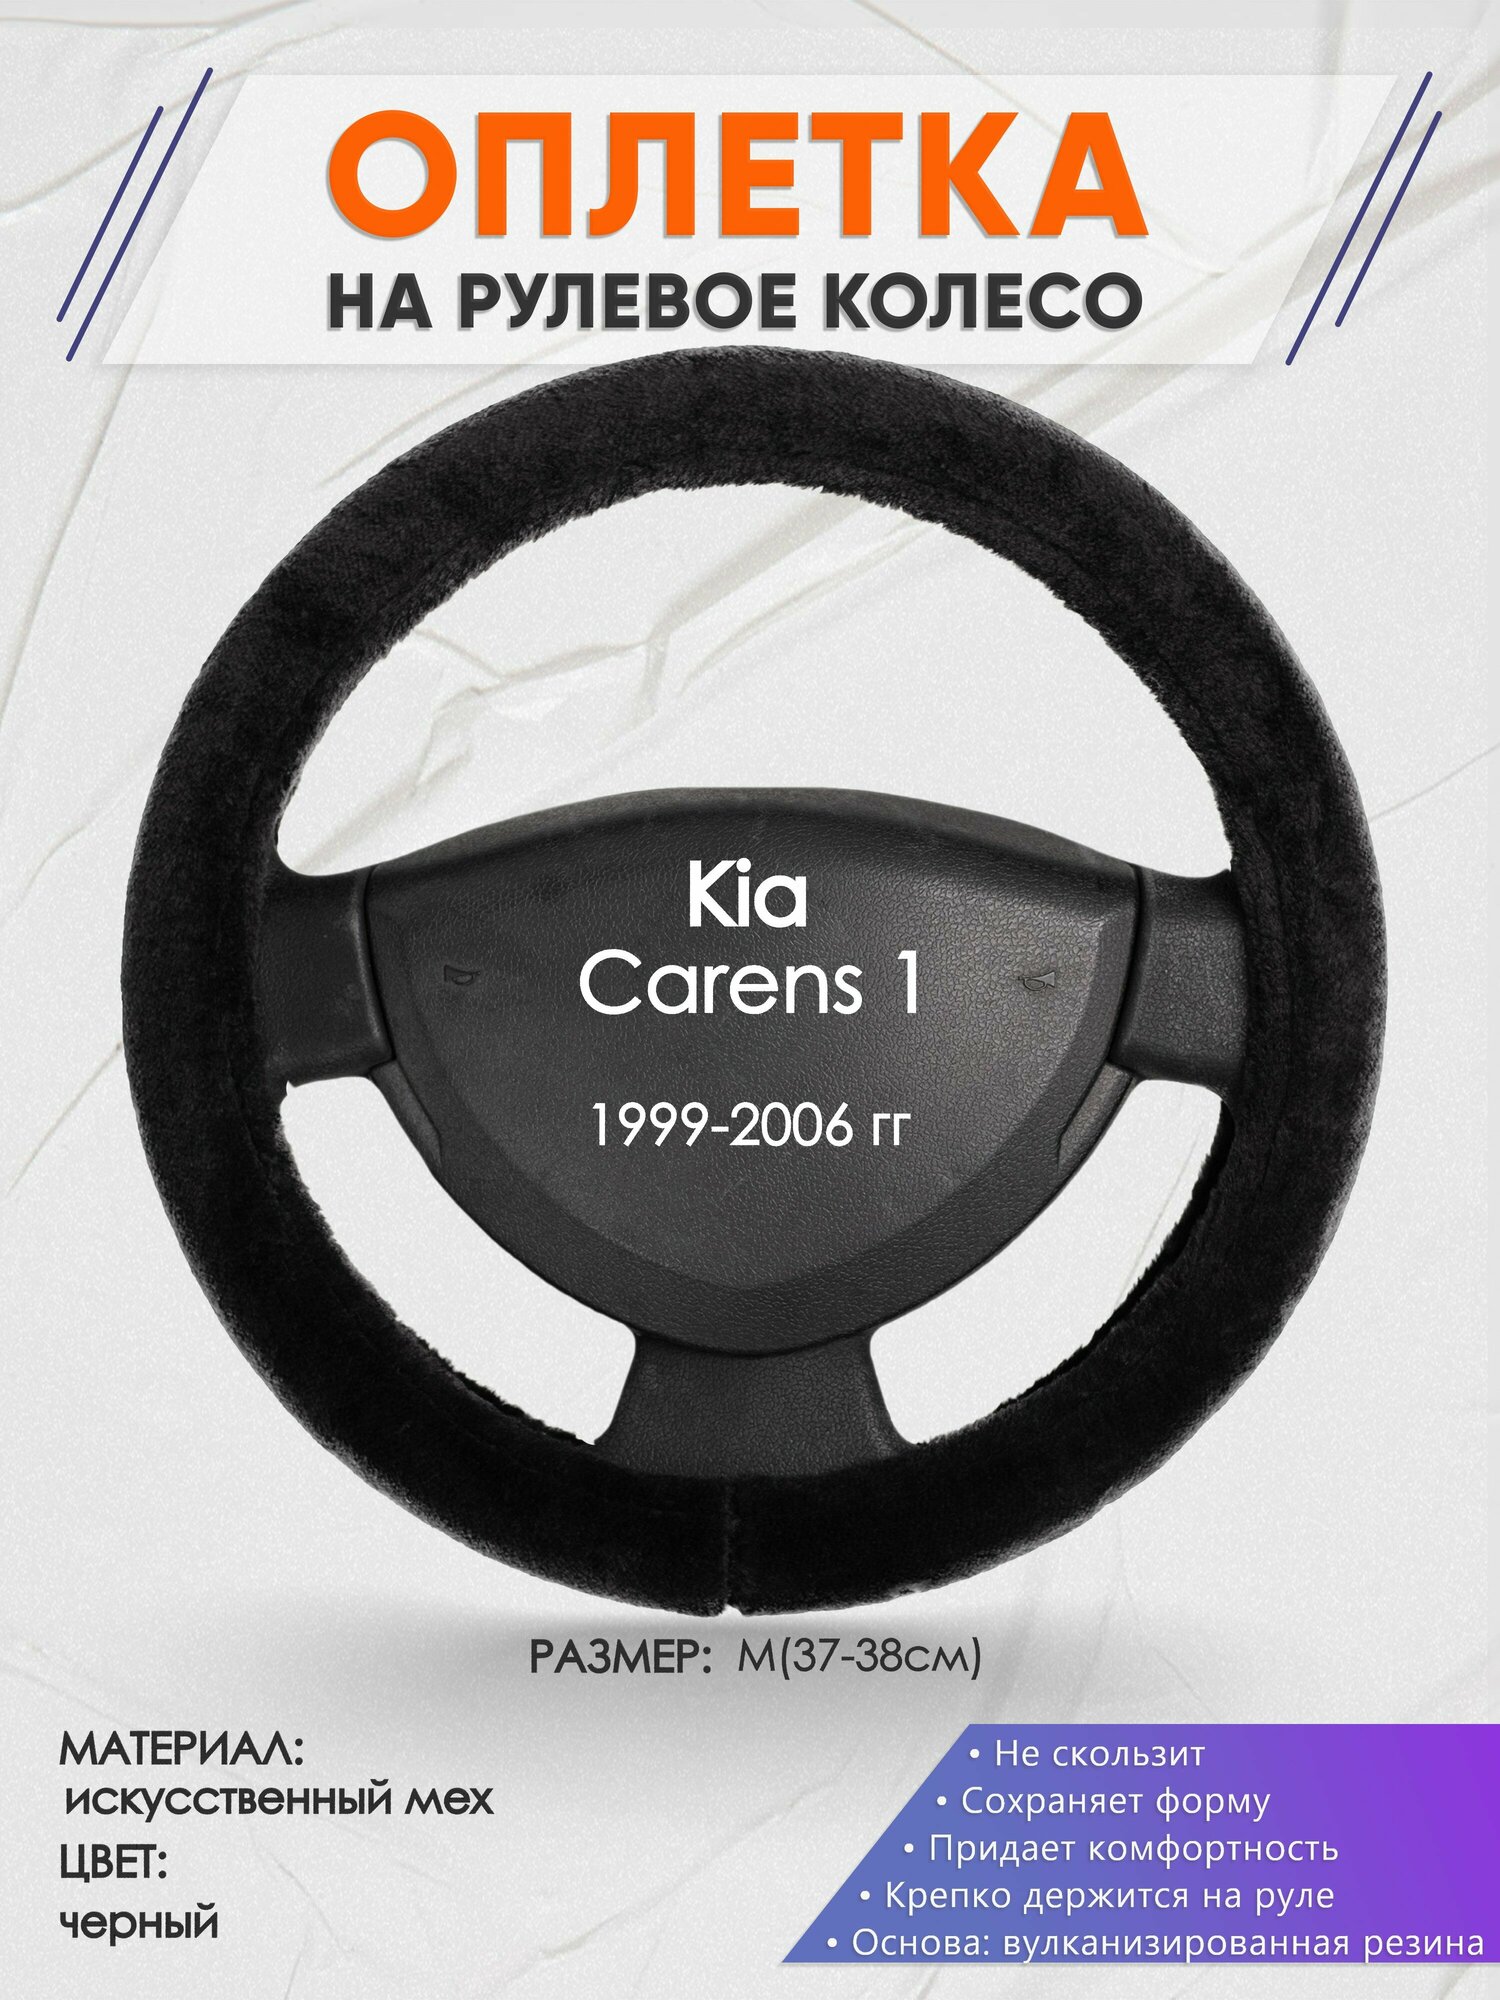 Оплетка на руль для Kia Carens 1(Киа Каренс 1) 1999-2006, M(37-38см), Искусственный мех 45